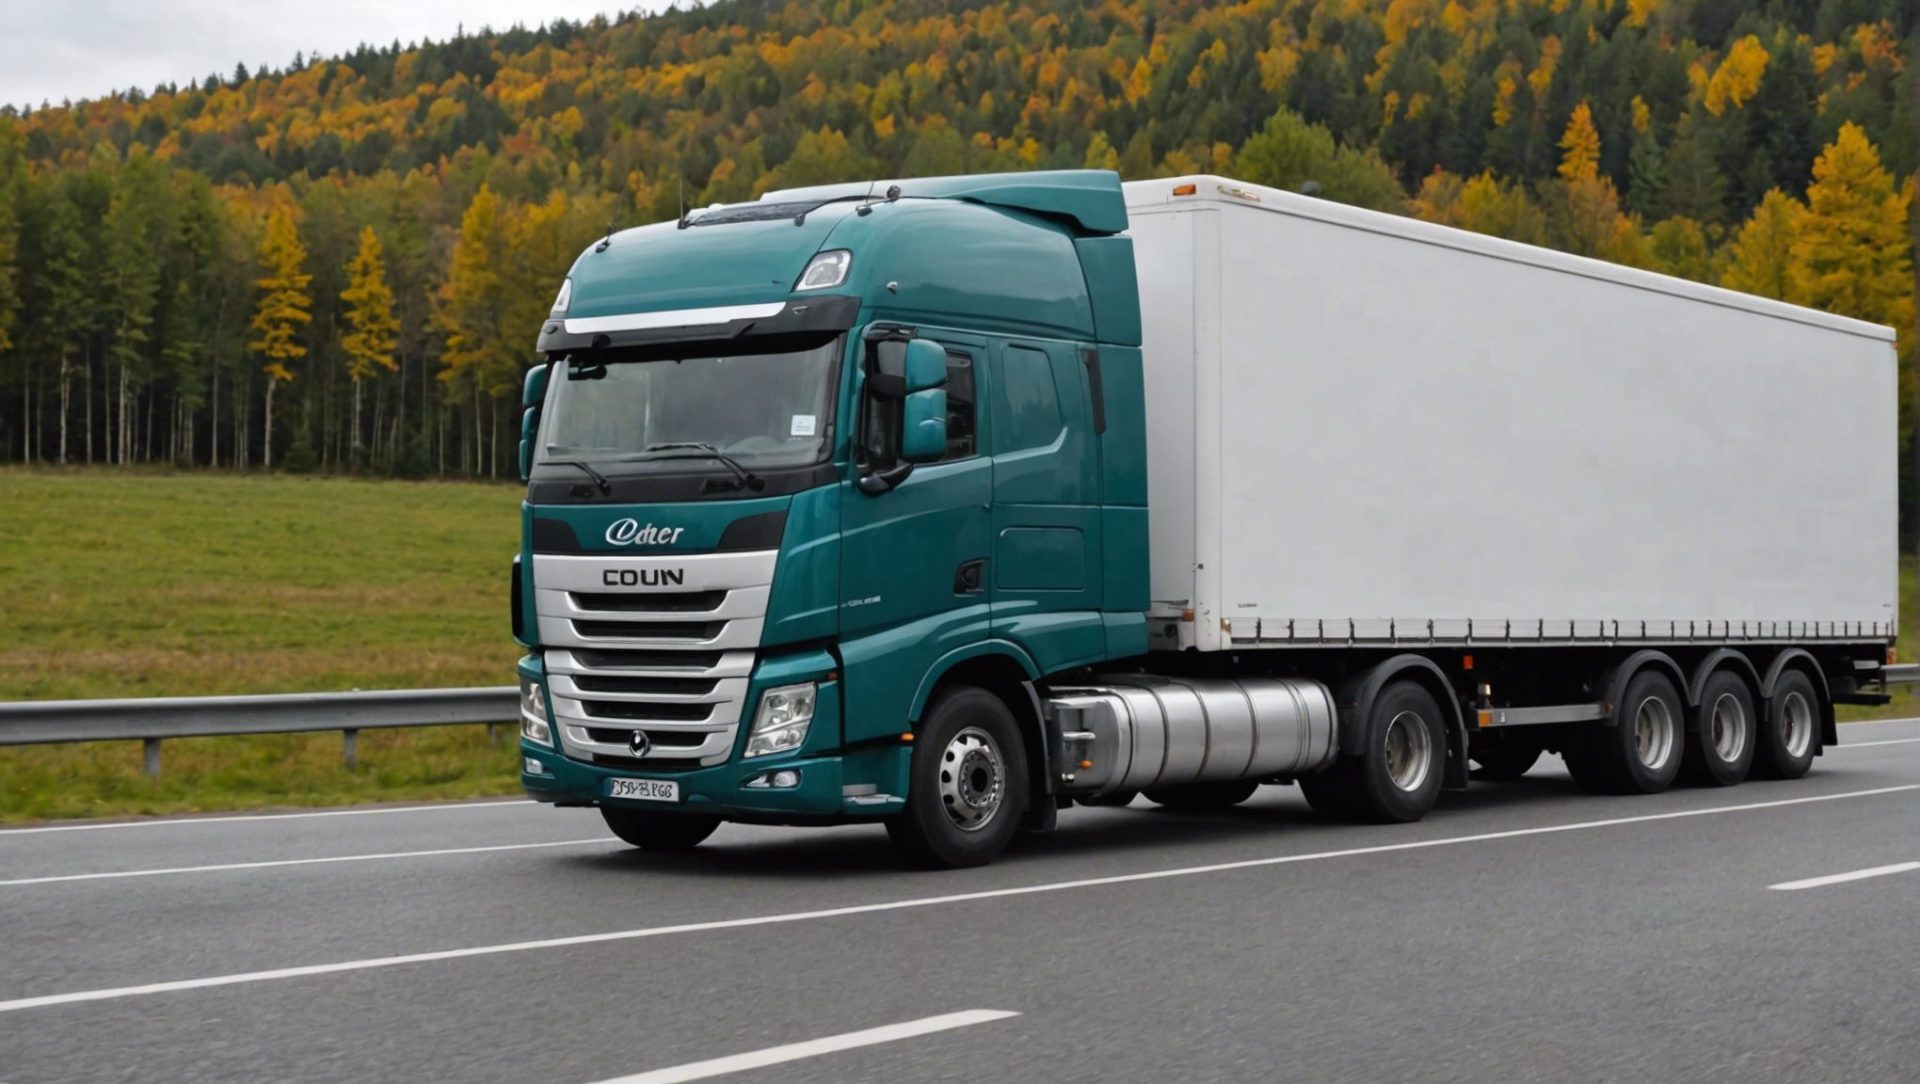 découvrez pourquoi souscrire une assurance camion de transport routier est essentiel pour protéger votre entreprise et votre activité de transport.